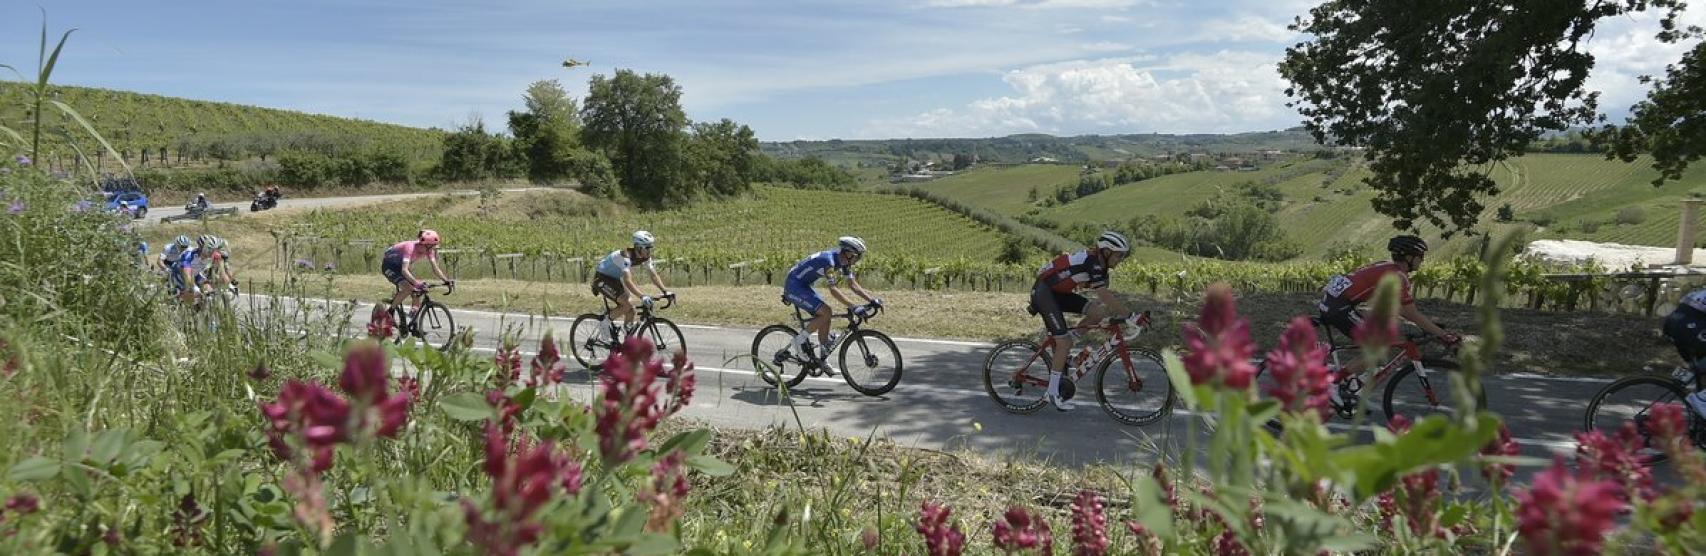 Giro de Italia 2019